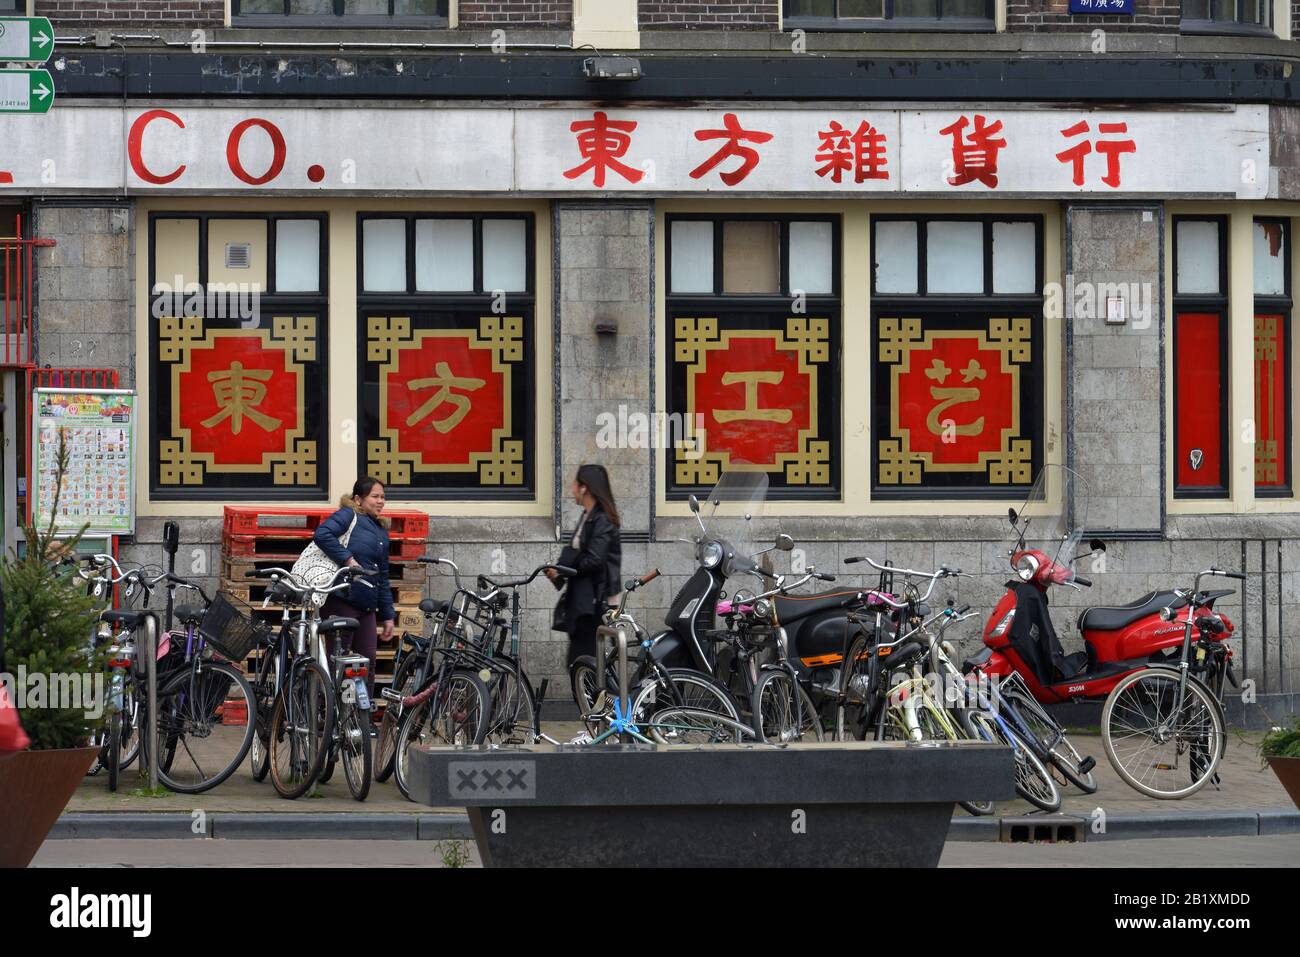 Chinesisches Geschaeft, Nieuwmarkt, Amsterdam, Niederlande Foto Stock